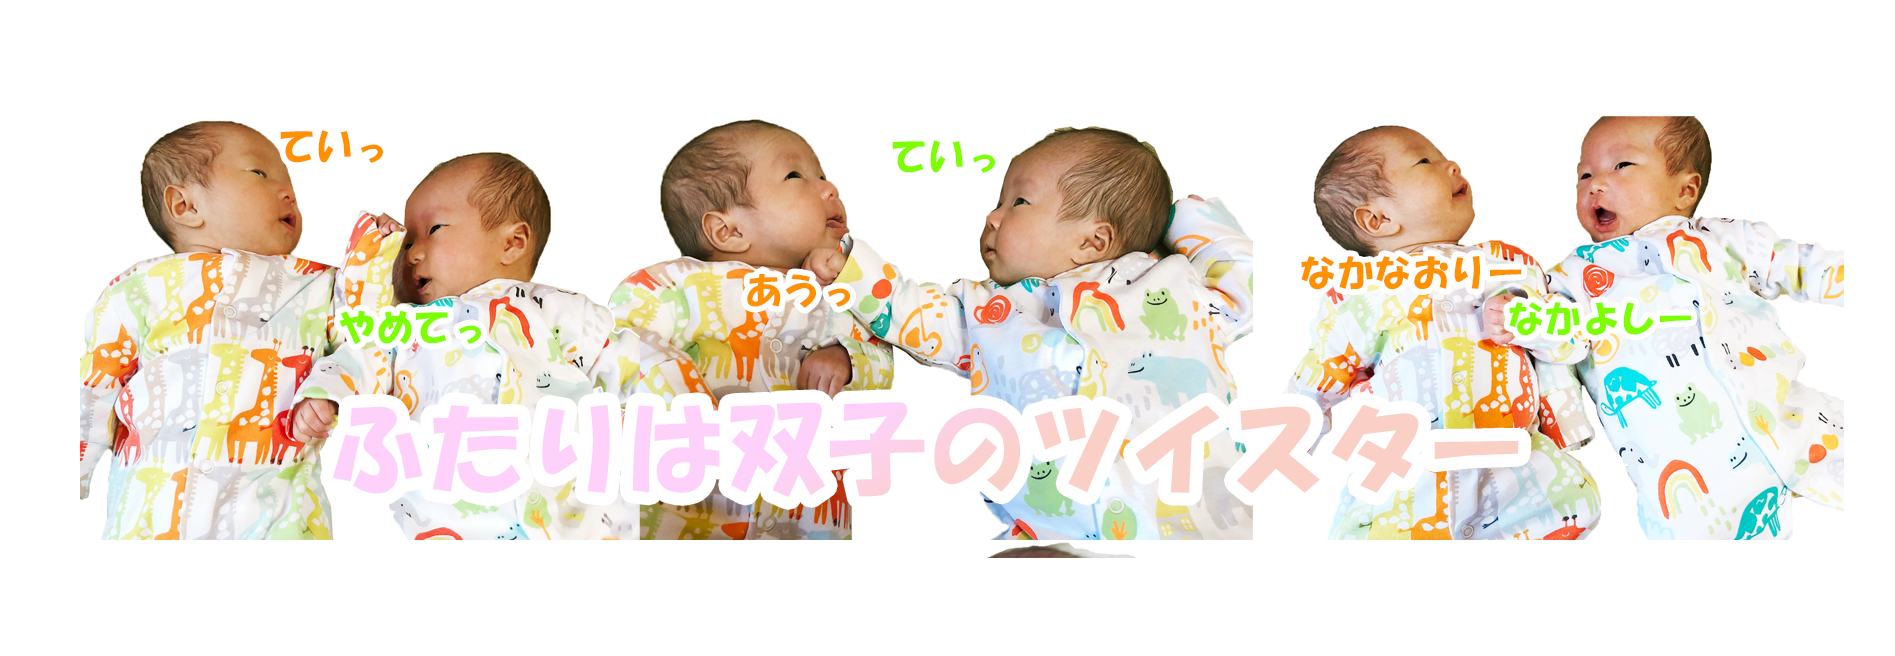 生後248日 双子の1週間のおむつ消費量 顔や仕草もそっくり 一卵性双生児 ミルク量 睡眠量 体重などデータ公開 楽天ブログ